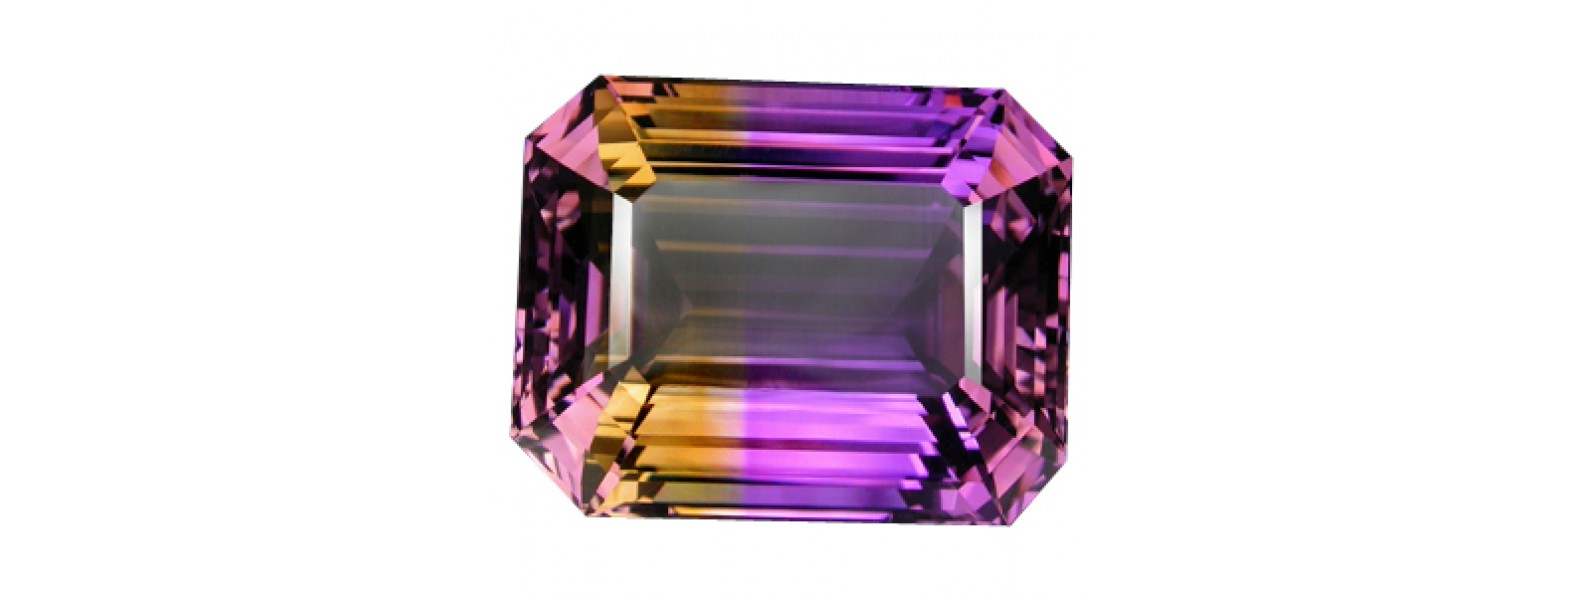 Buy quality Ametrine gems online | Natural Ametrine Gemstones - Gempiece